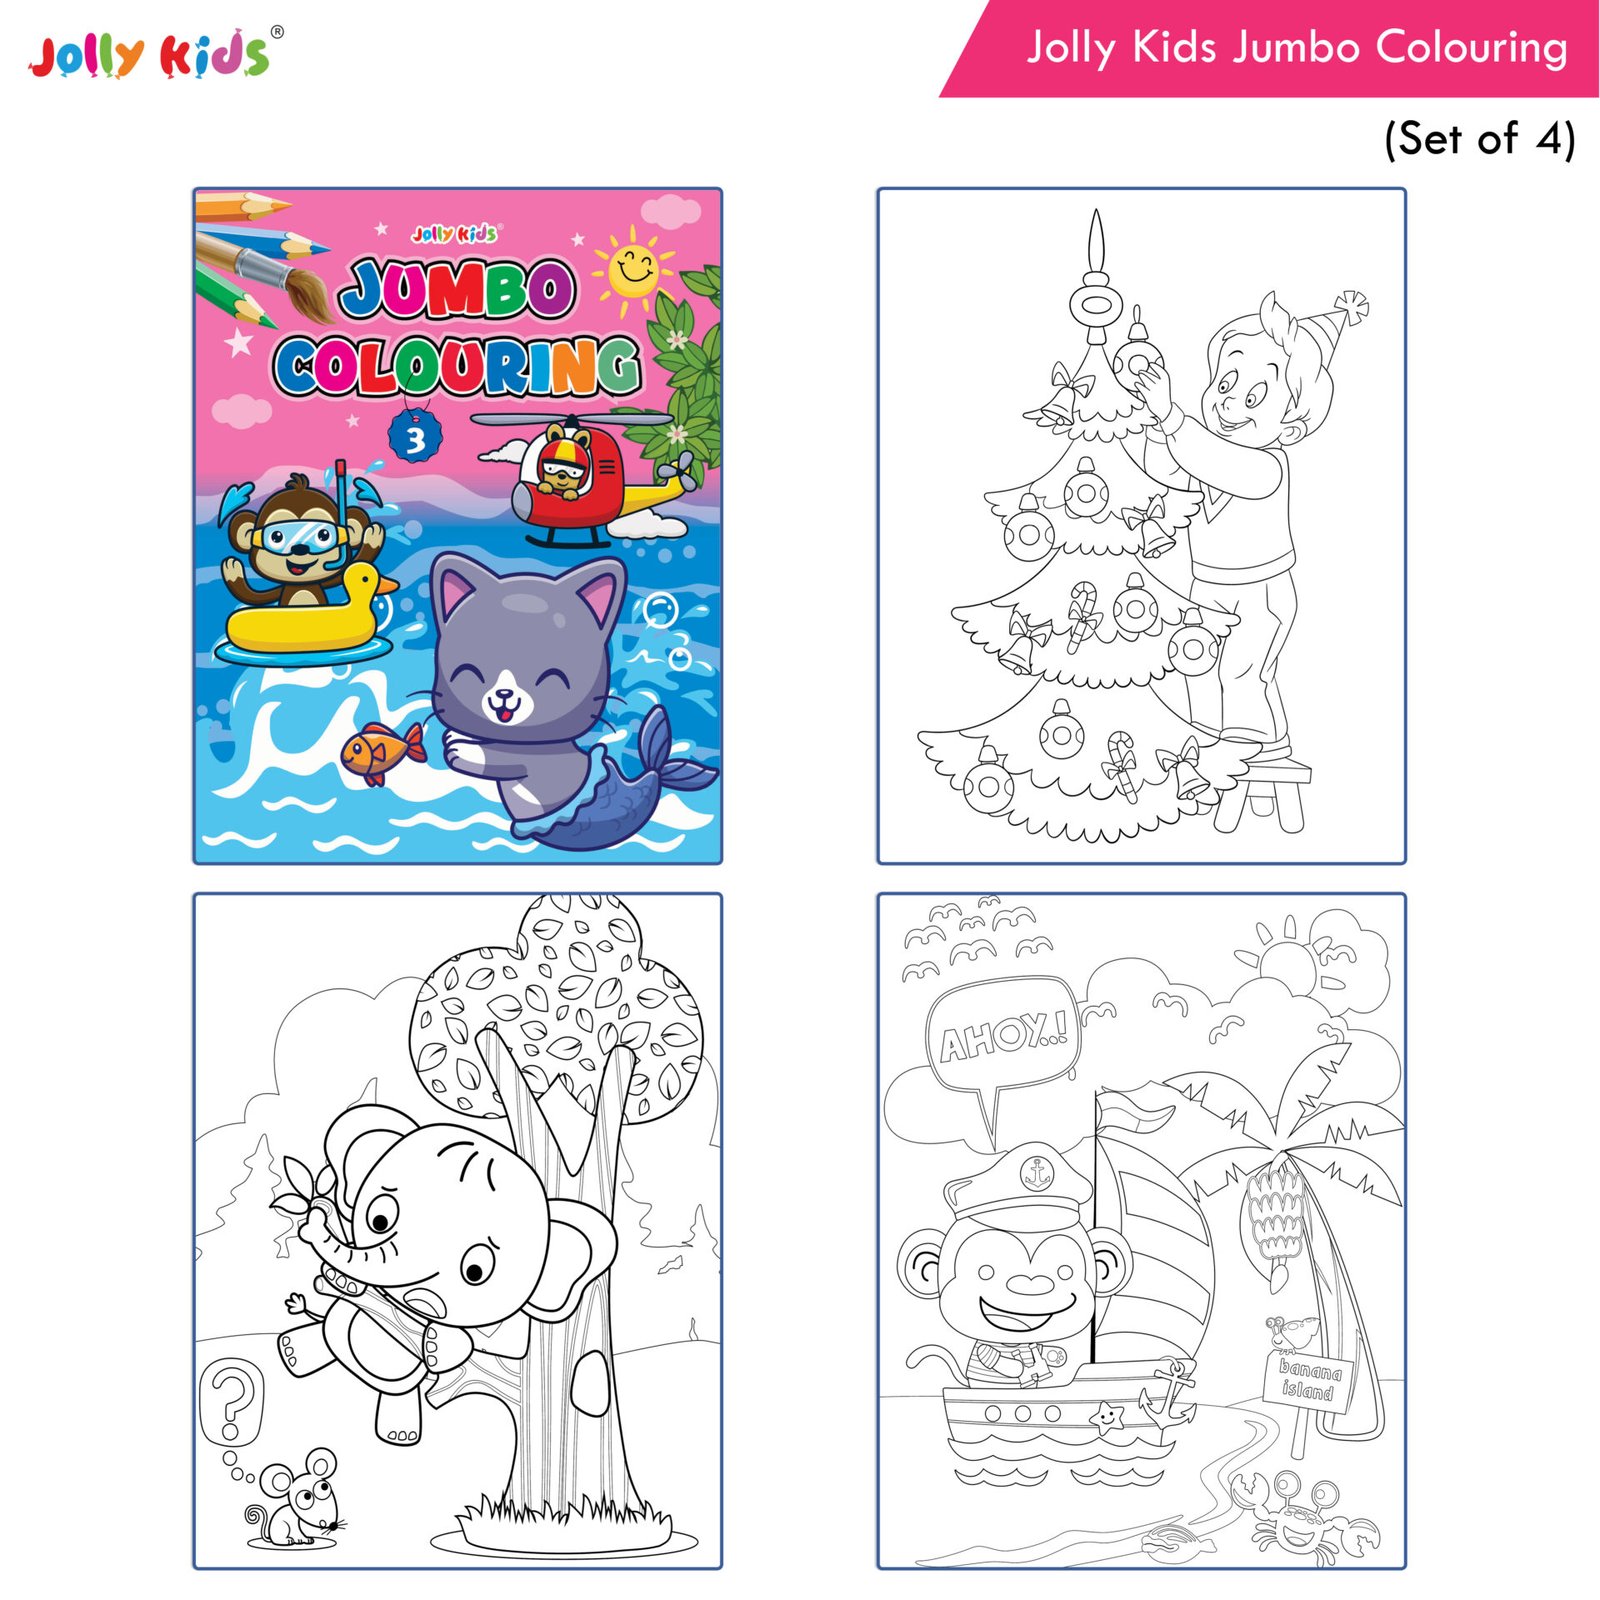 https://www.shethbooks.com/wp-content/uploads/2022/03/JK-Jumbo-Colouring-Books-Set-of-4-5.jpg